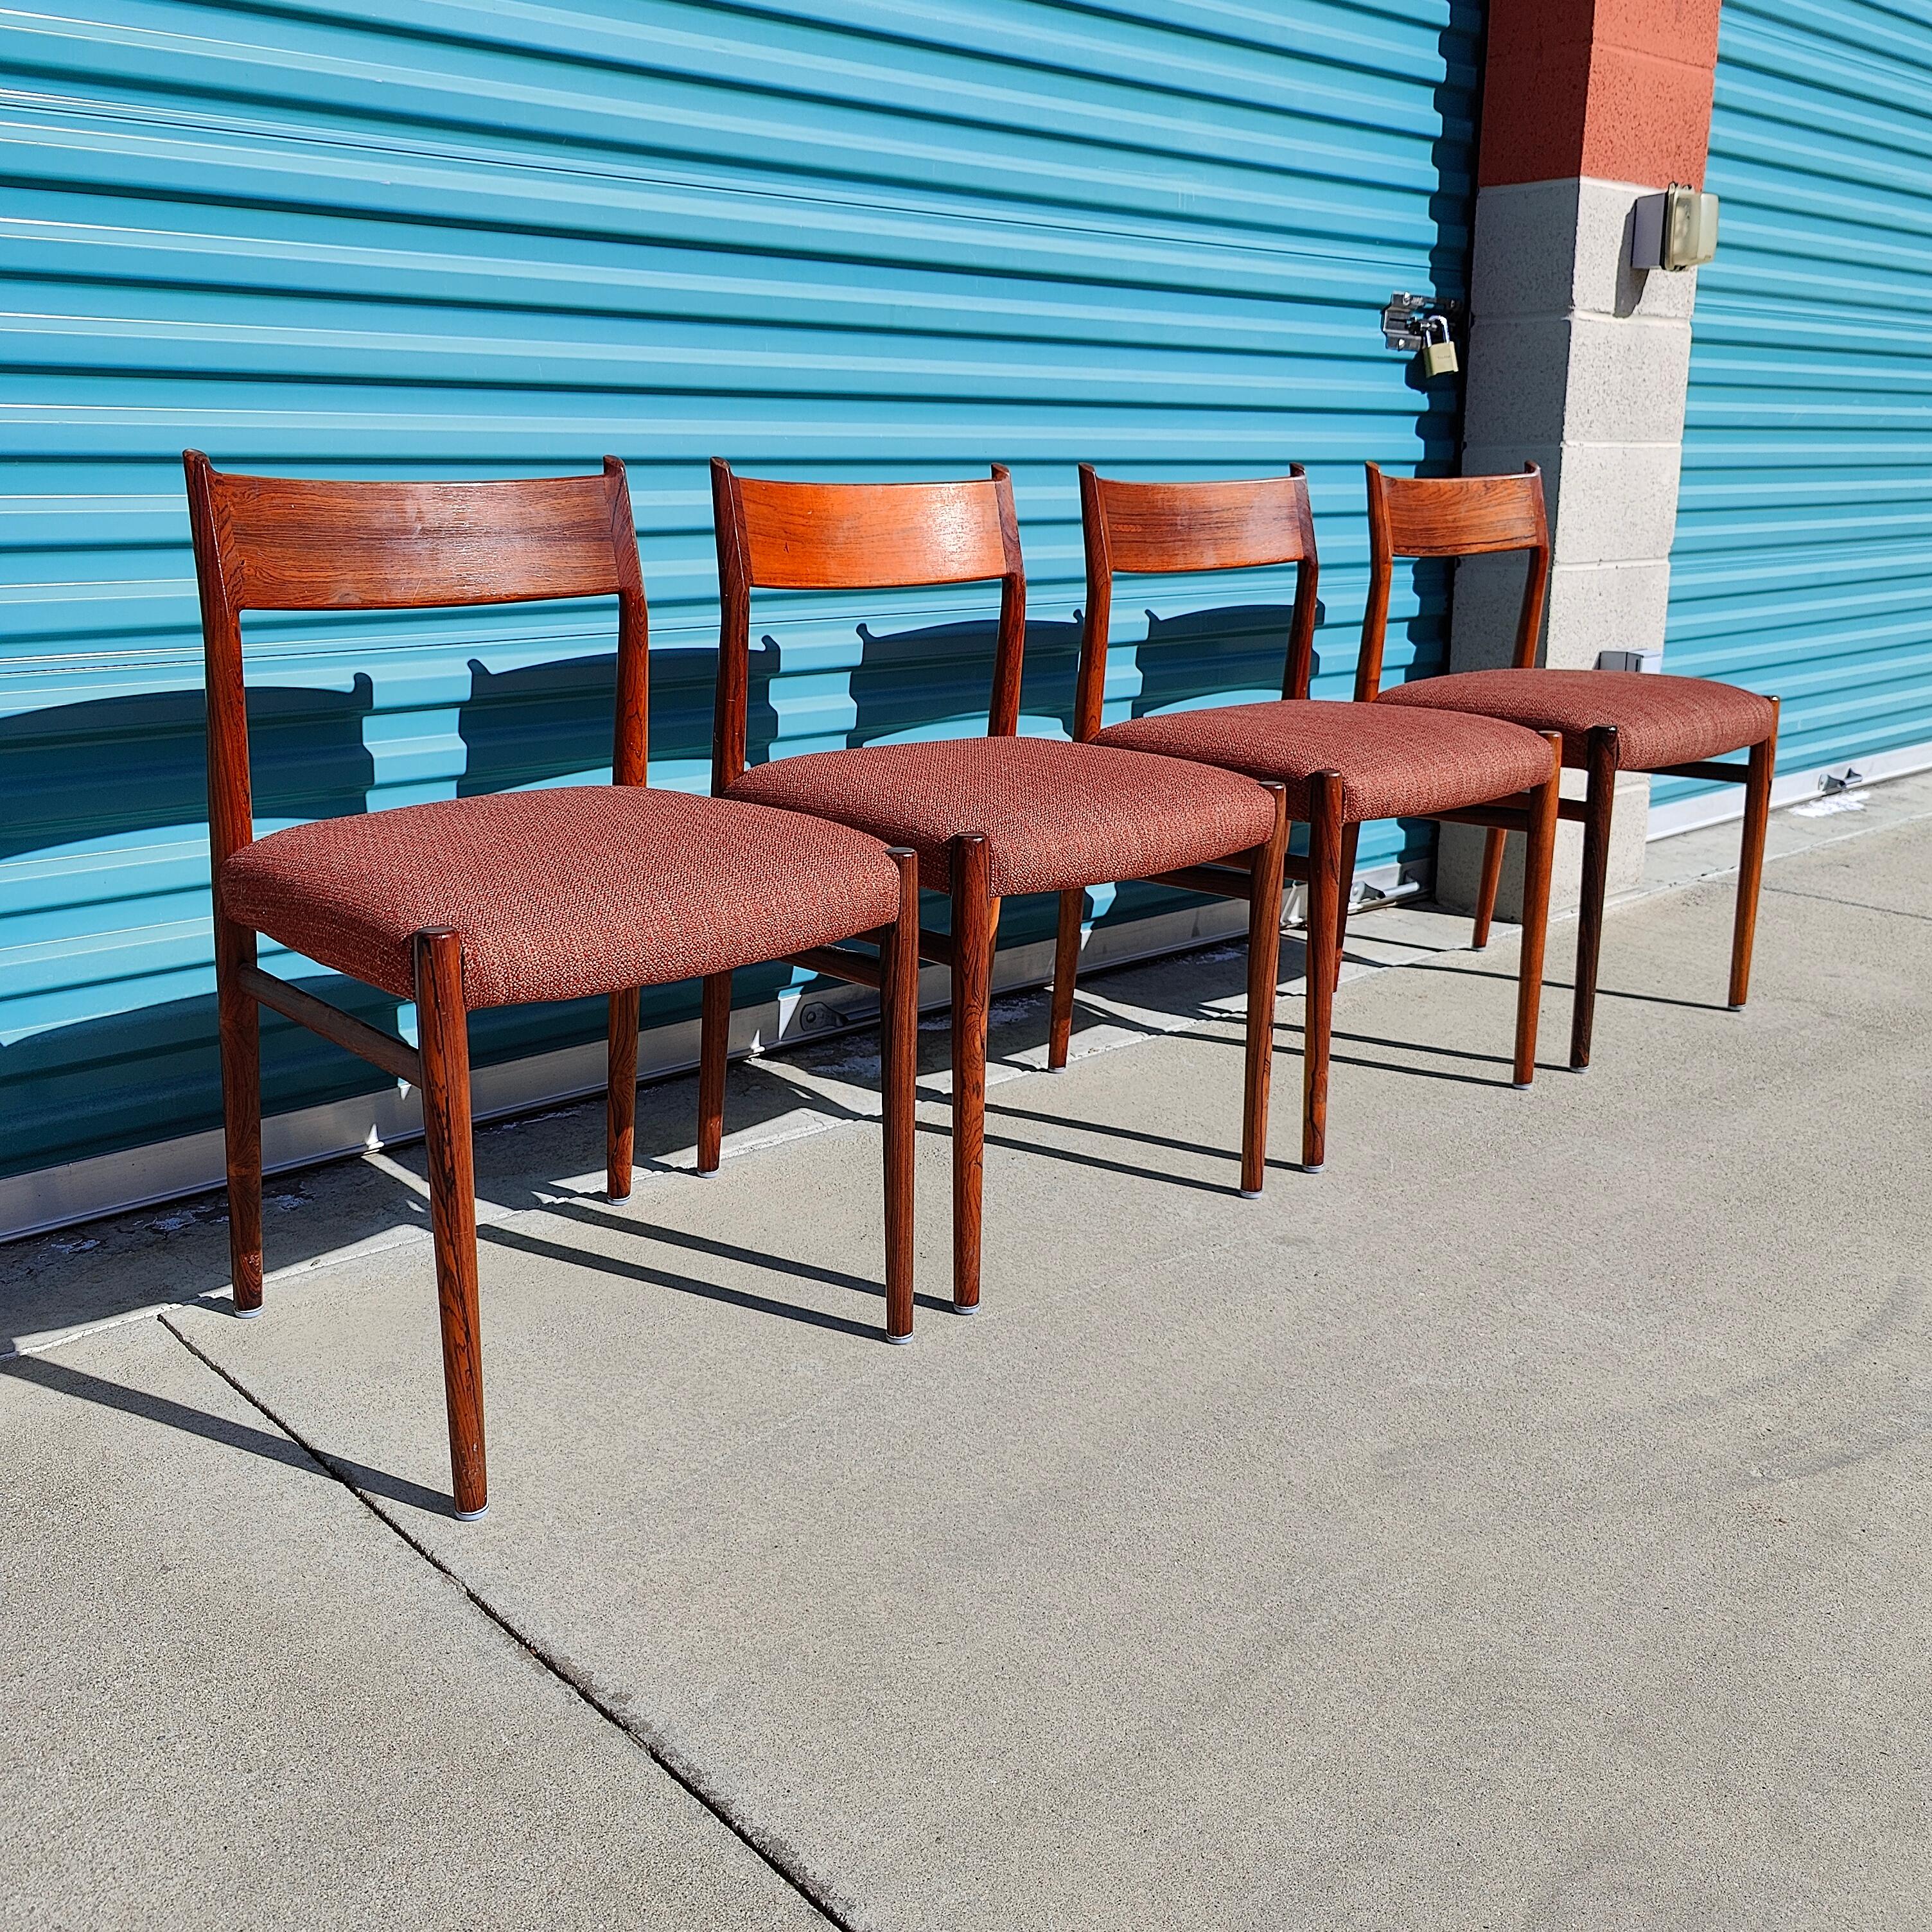 Ab sofort ist ein Set aus vier dänischen Esszimmerstühlen erhältlich, das von Arne Vodder für Sibast entworfen wurde. Diese Schönheiten sind aus massivem Palisanderholz gefertigt und weisen eine erstaunliche Maserung mit Originalstoff auf. Die